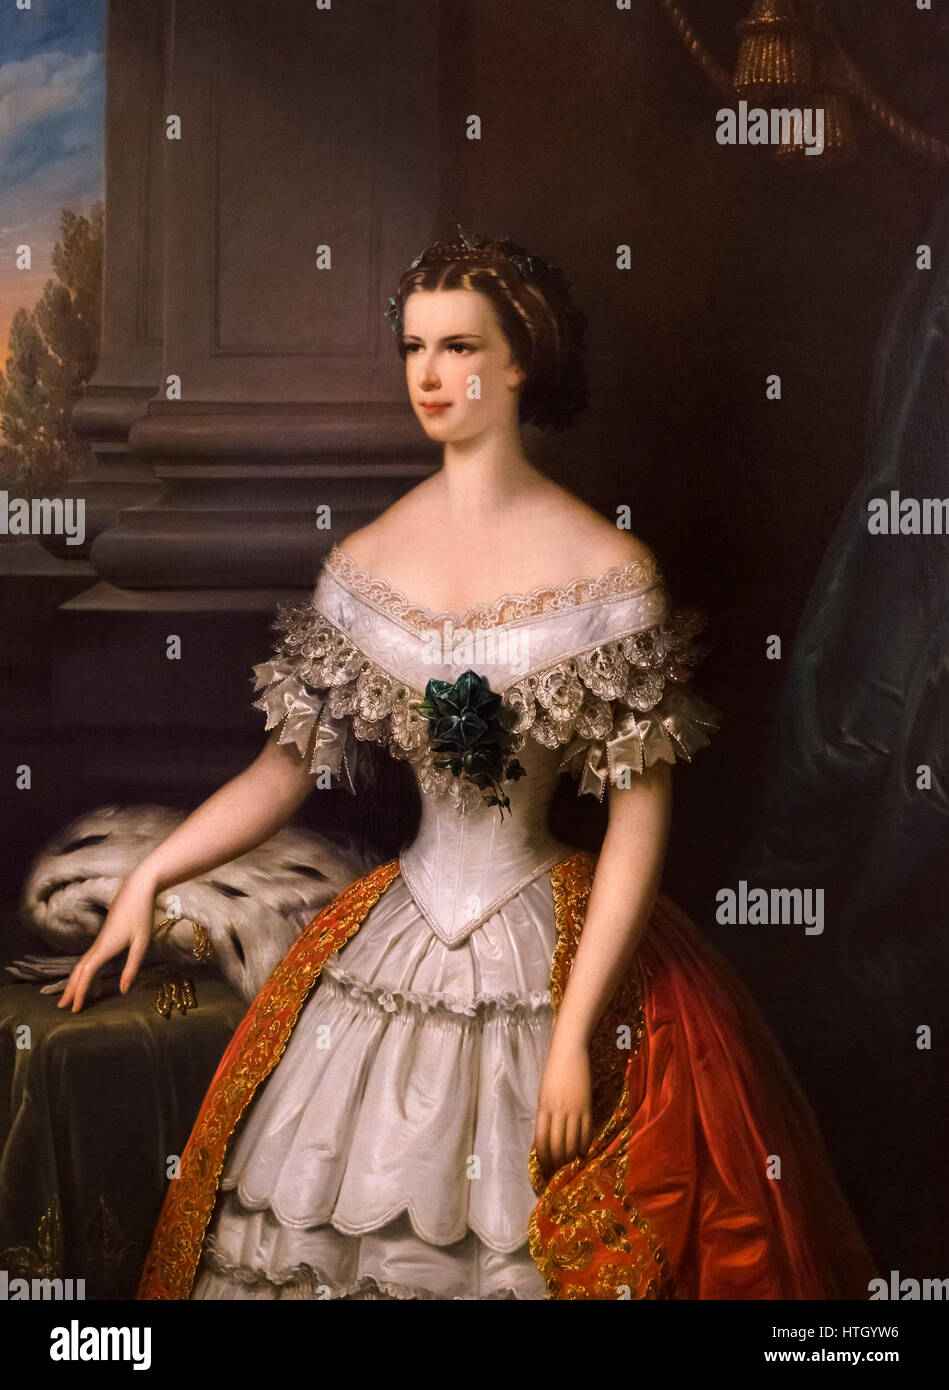 Sisi, Portrait. Kaiserin Elisabeth von Österreich (1837-1898), als Sisi, die Frau von Kaiser Franz Joseph I. Gemälde von Franz Schrotzberg, Öl auf Leinwand, 1856 bekannt. Stockfoto